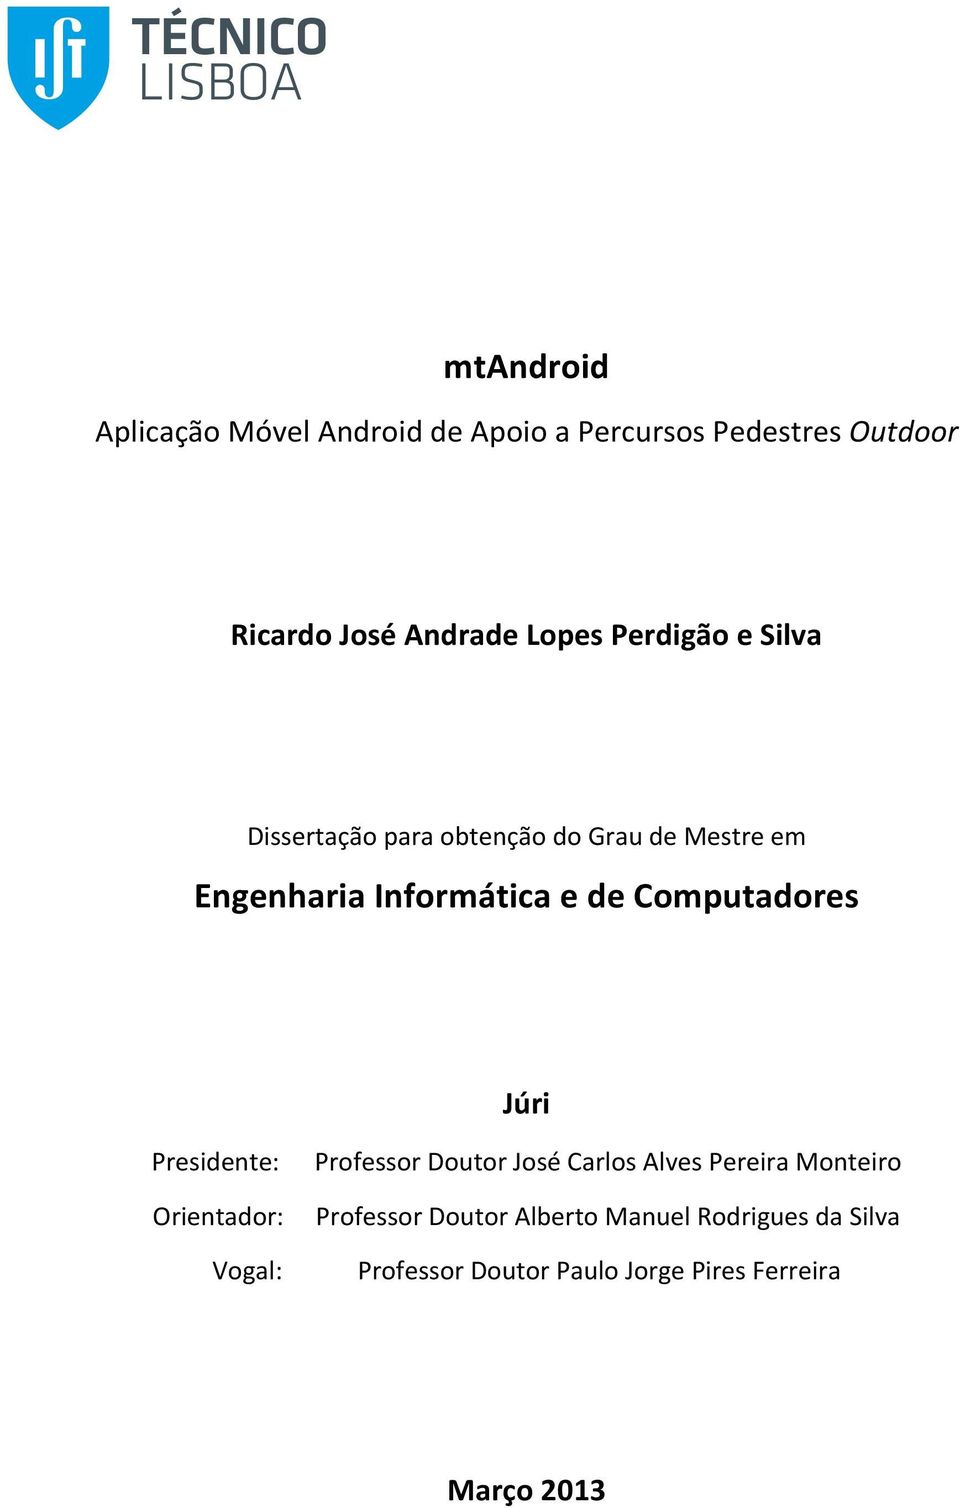 Examination Committee Presidente: Professor Doutor José Carlos Alves Pereira Monteiro Chairperson: Orientador: Prof.